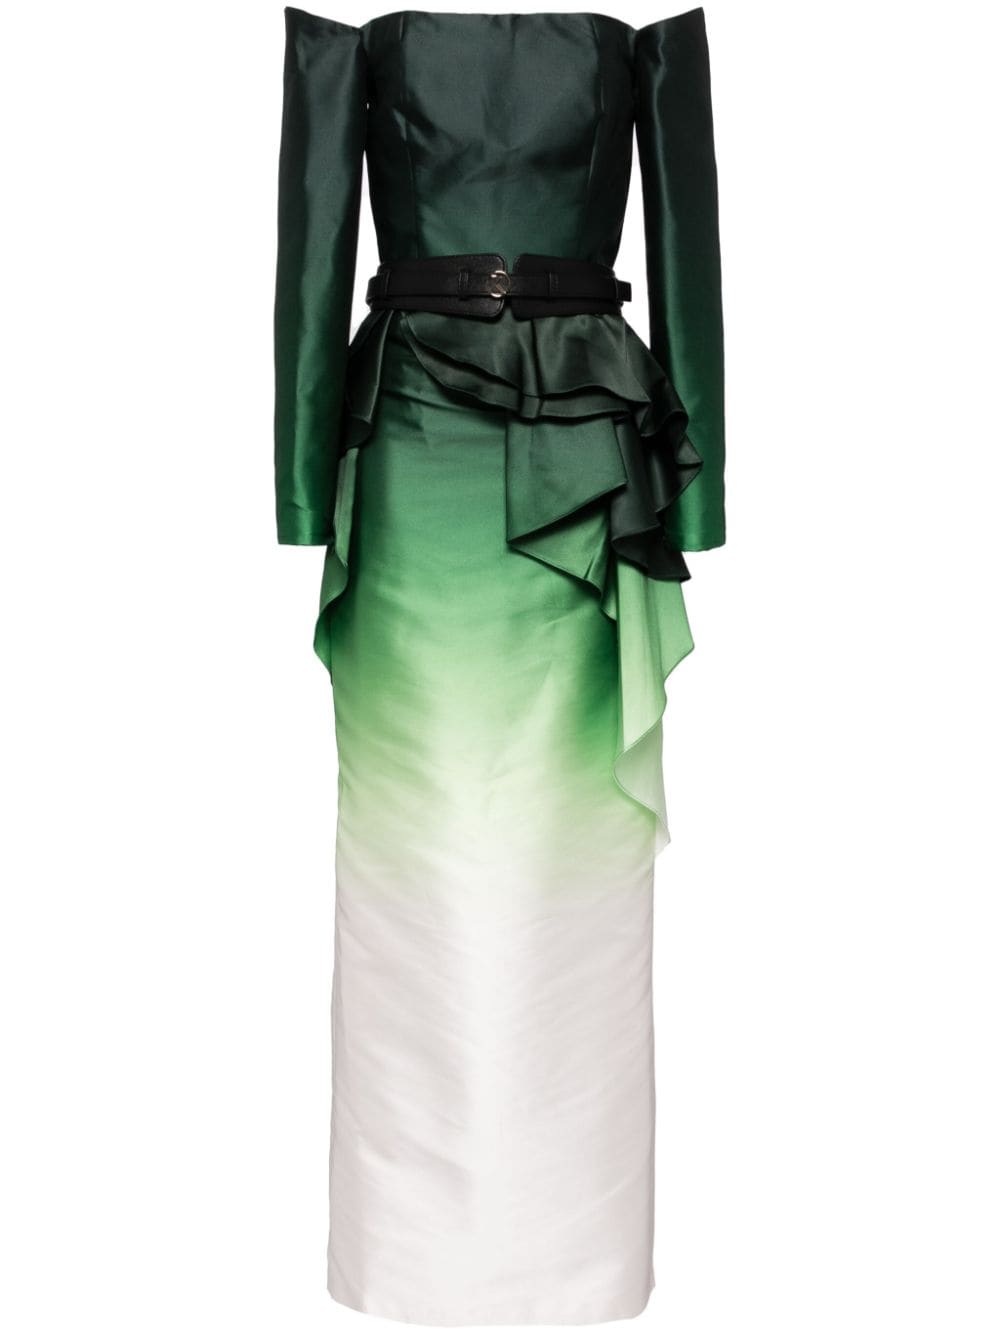 Saiid Kobeisy one-shoulder gradient dress - Green von Saiid Kobeisy